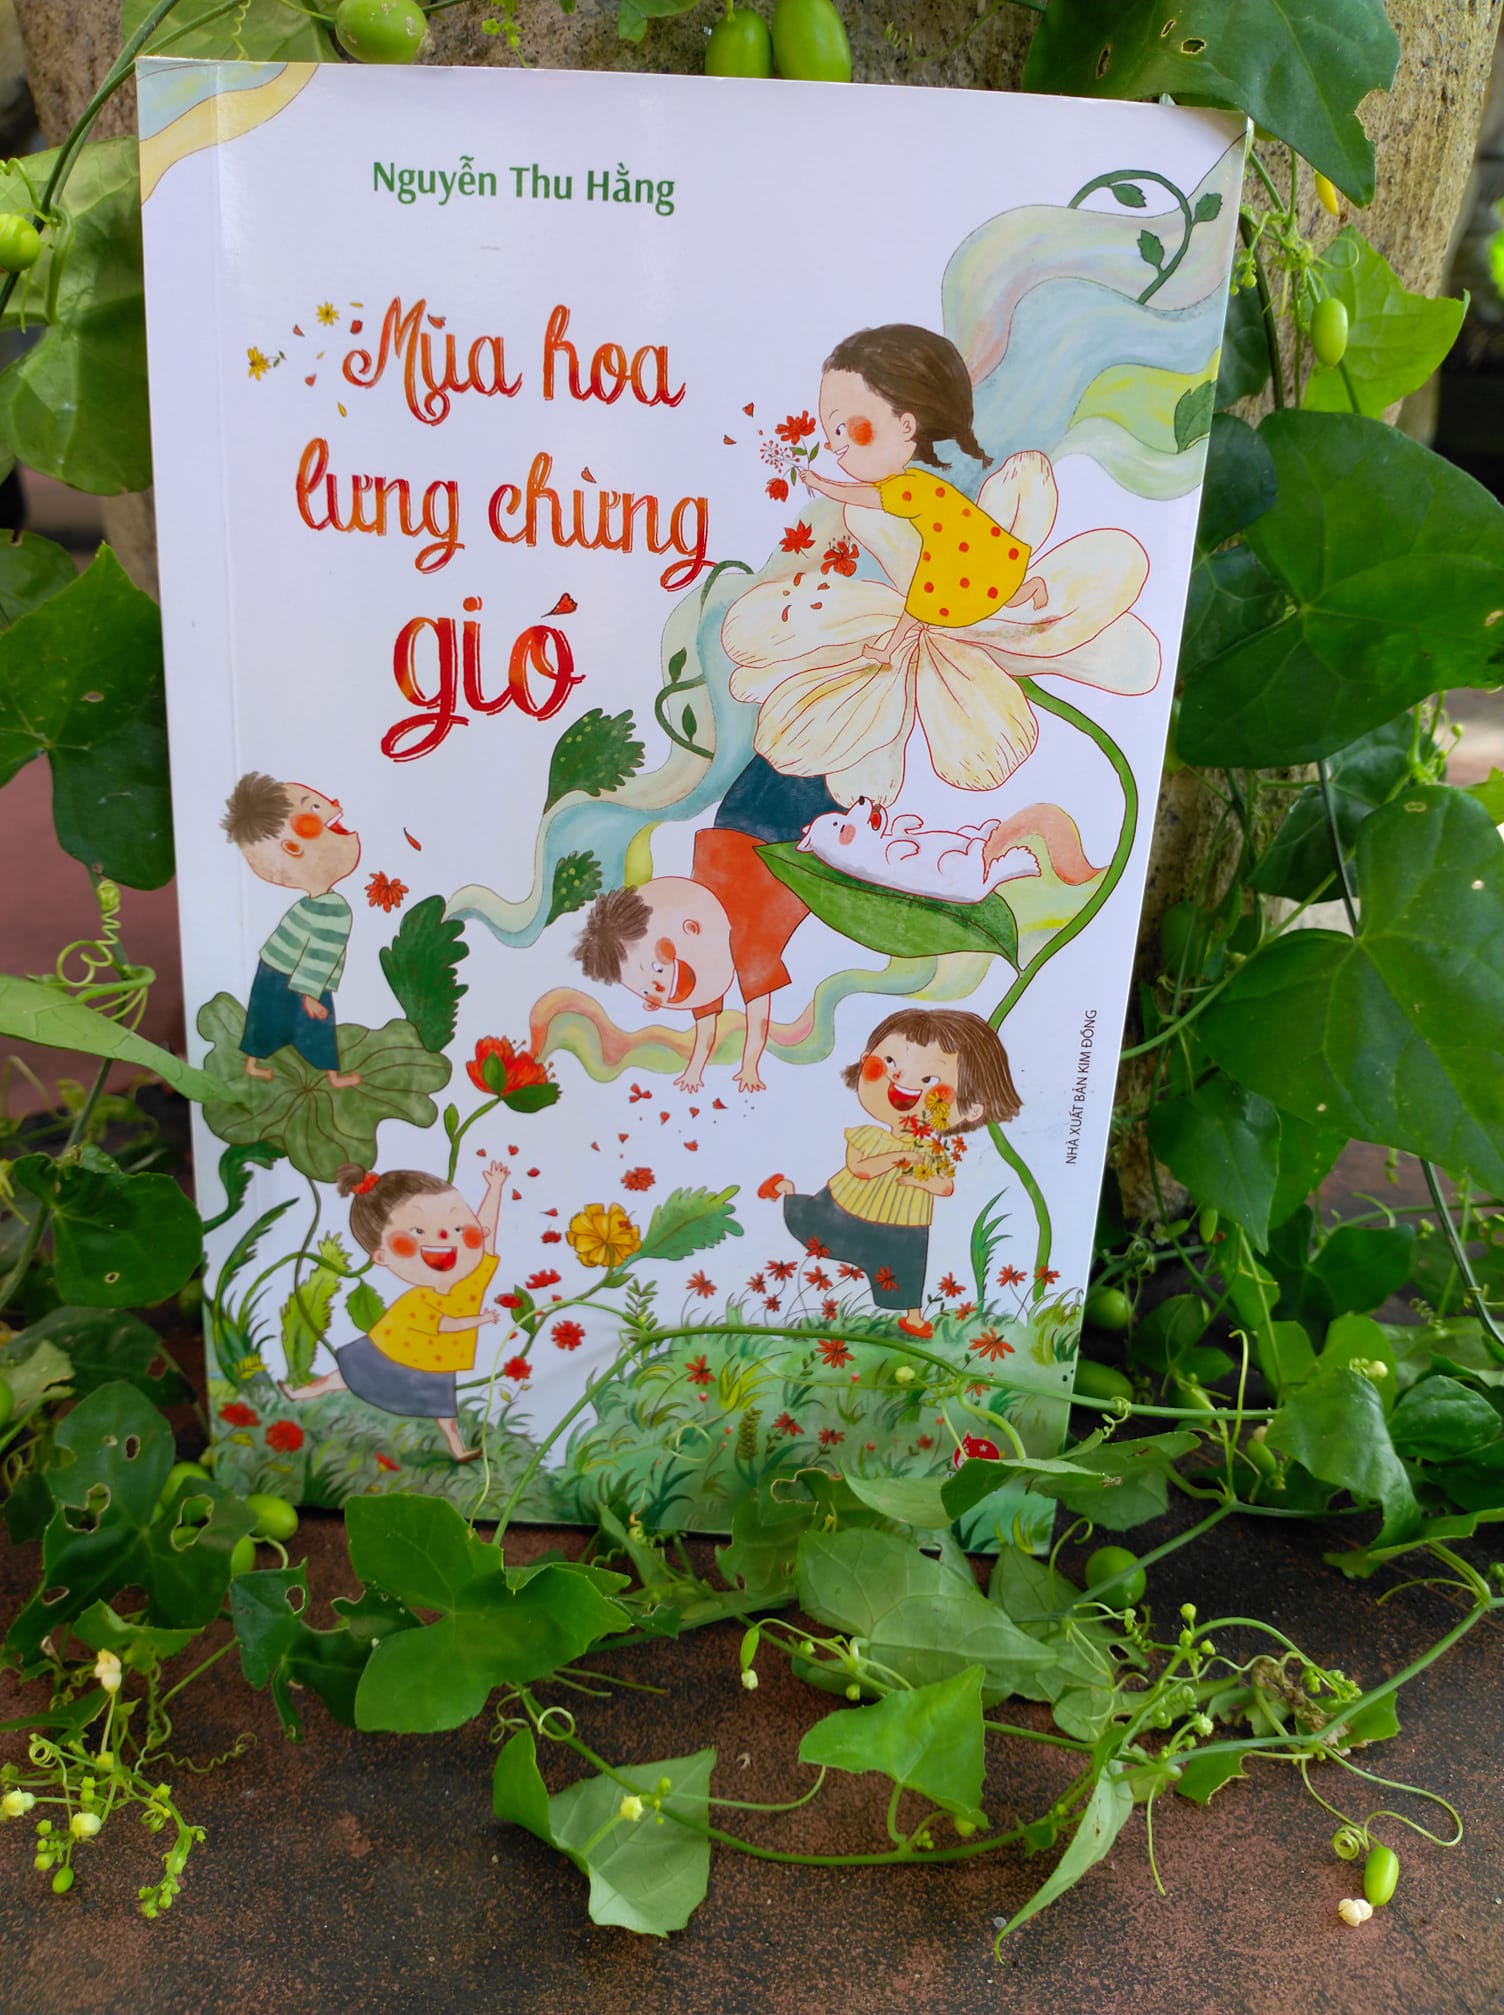 Mùa hoa lưng chừng gió là tác phẩm viết cho thiếu nhi của nhà văn Nguyễn Thu Hằng